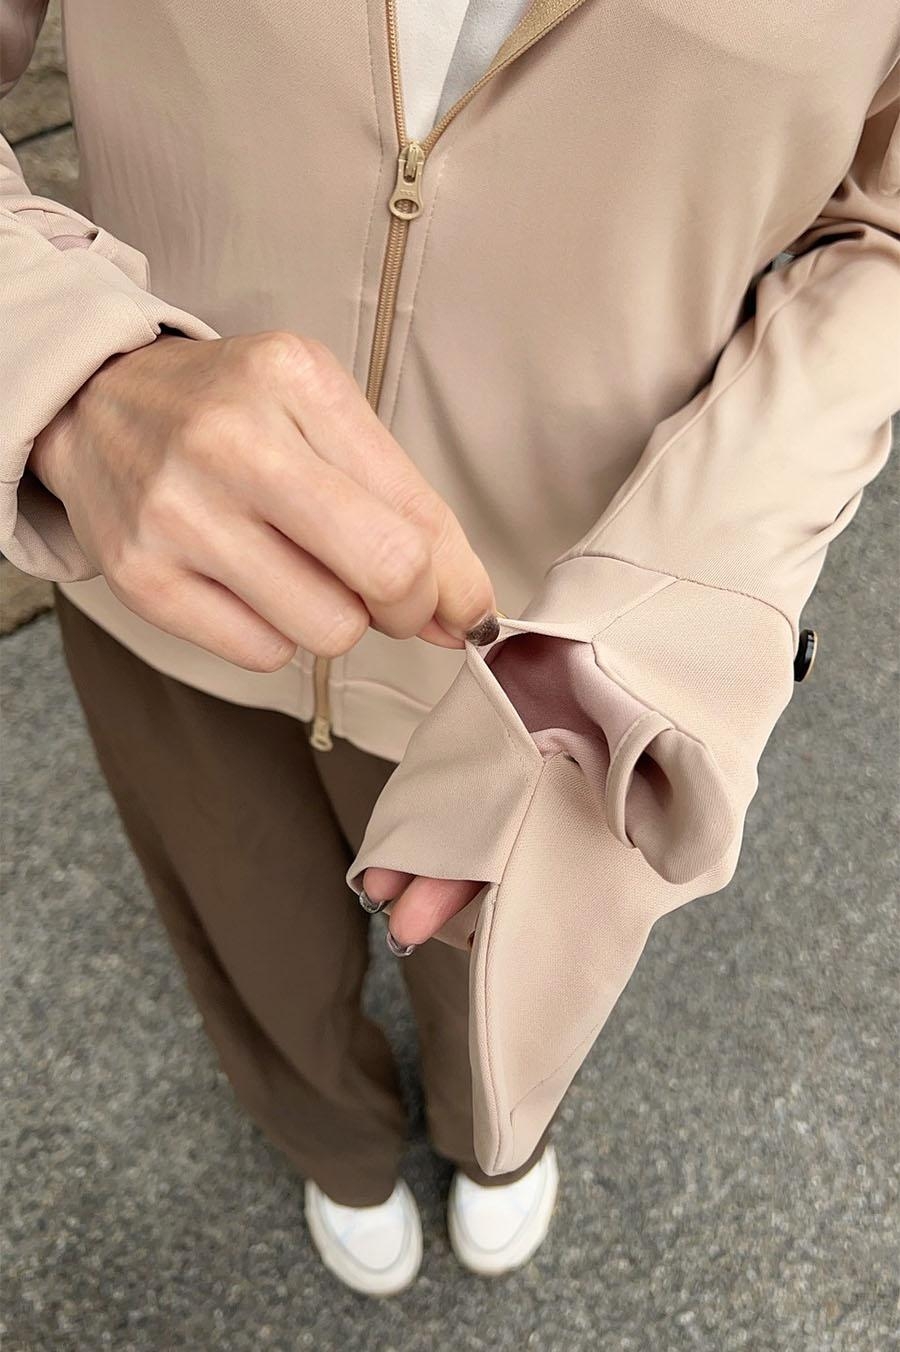 [揪團] 防曬涼感外套 3DKING超強4款專利變形涼感防曬外套推薦-讓上半身都不怕曬的酷涼顯瘦防曬外套